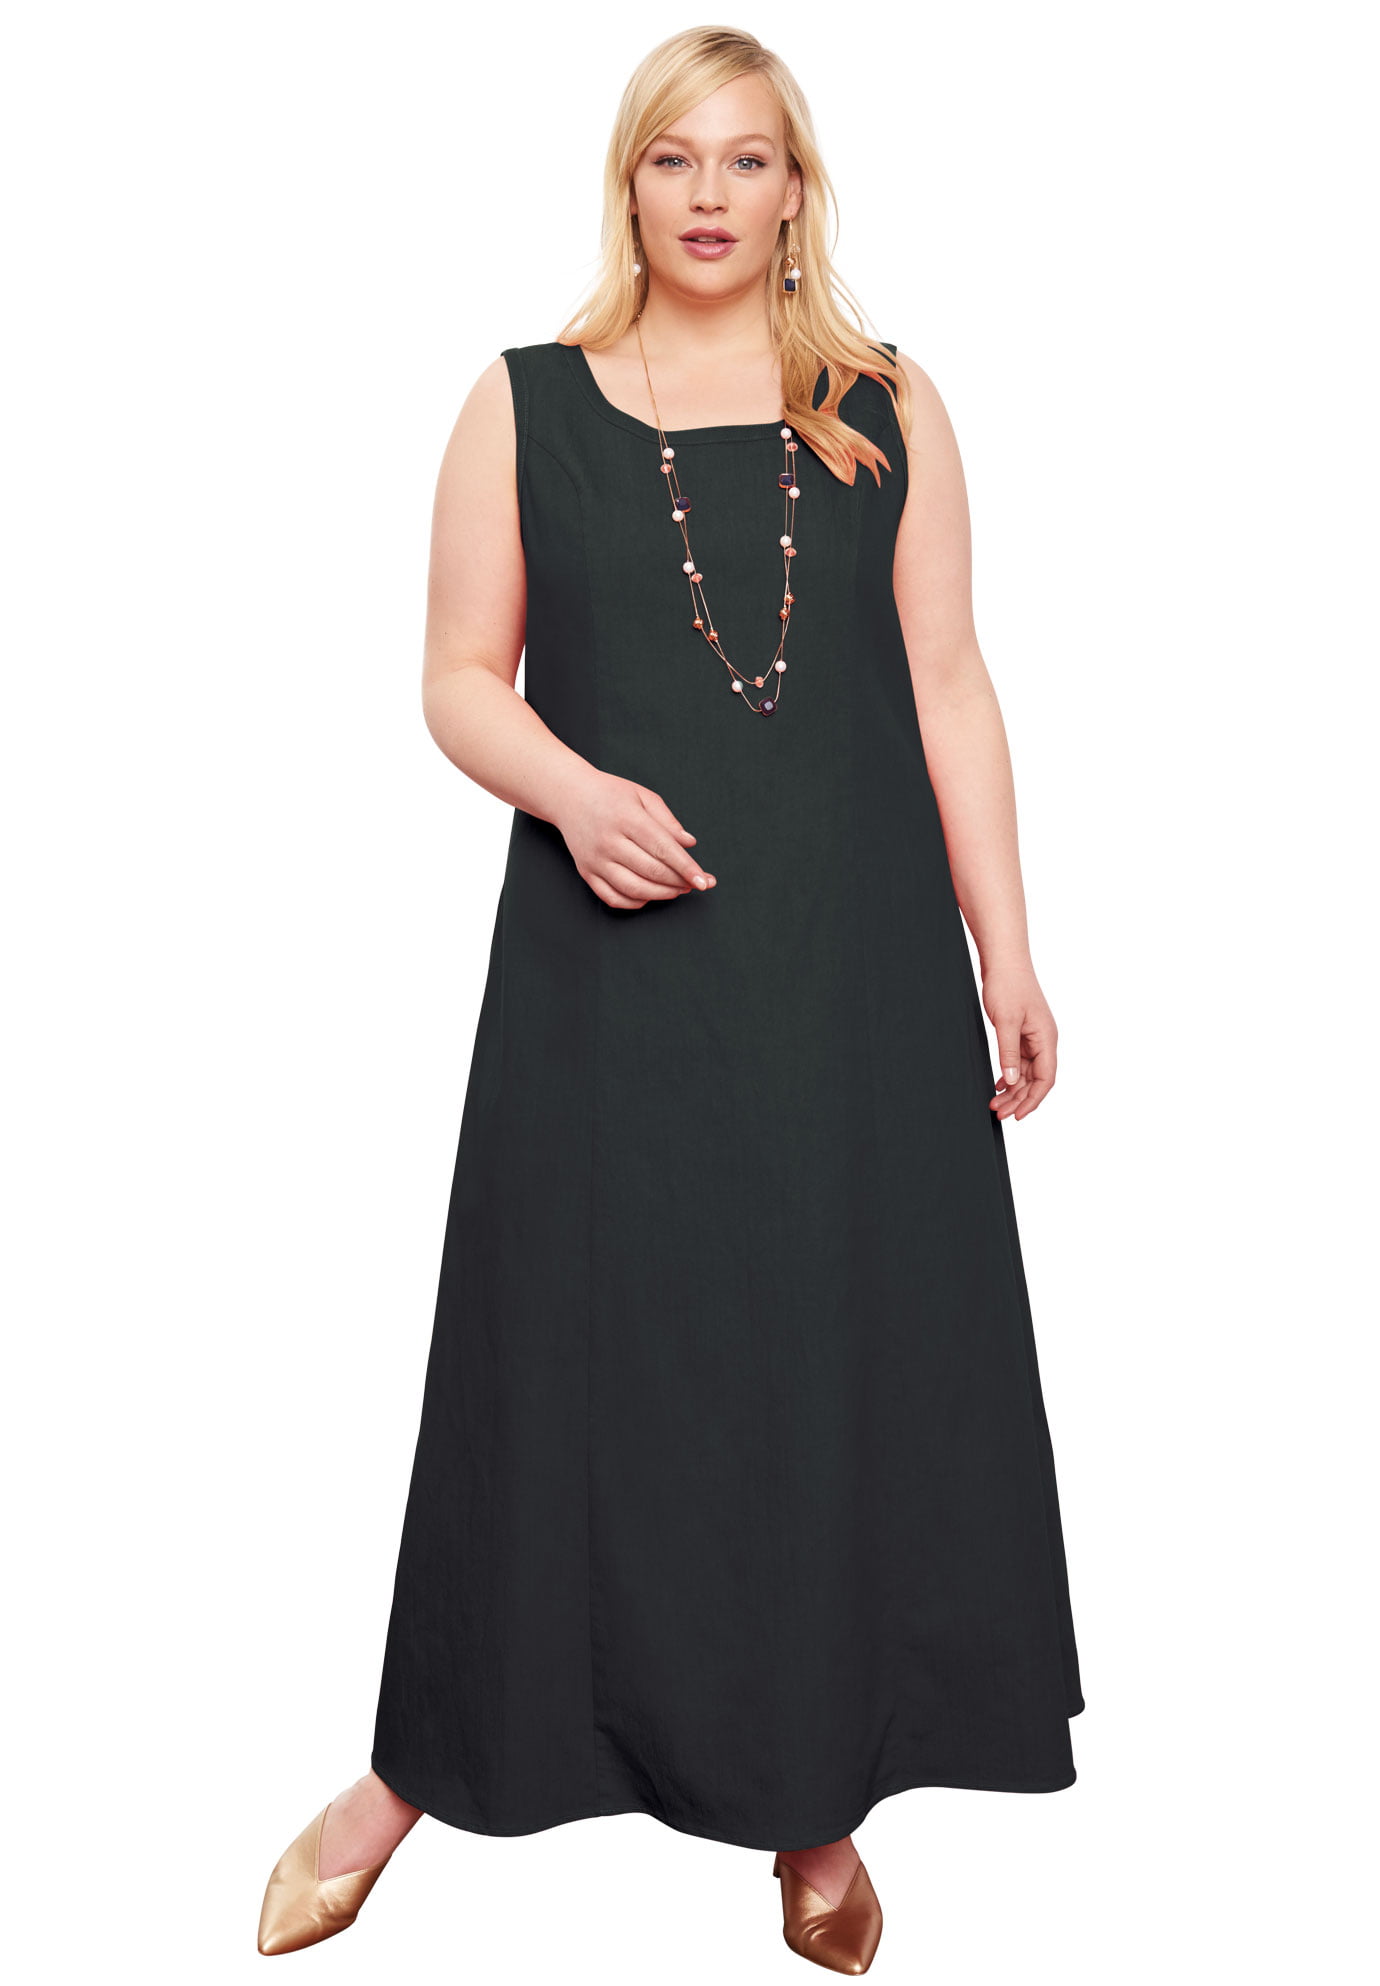 Buy > jessica london denim dress > in stock